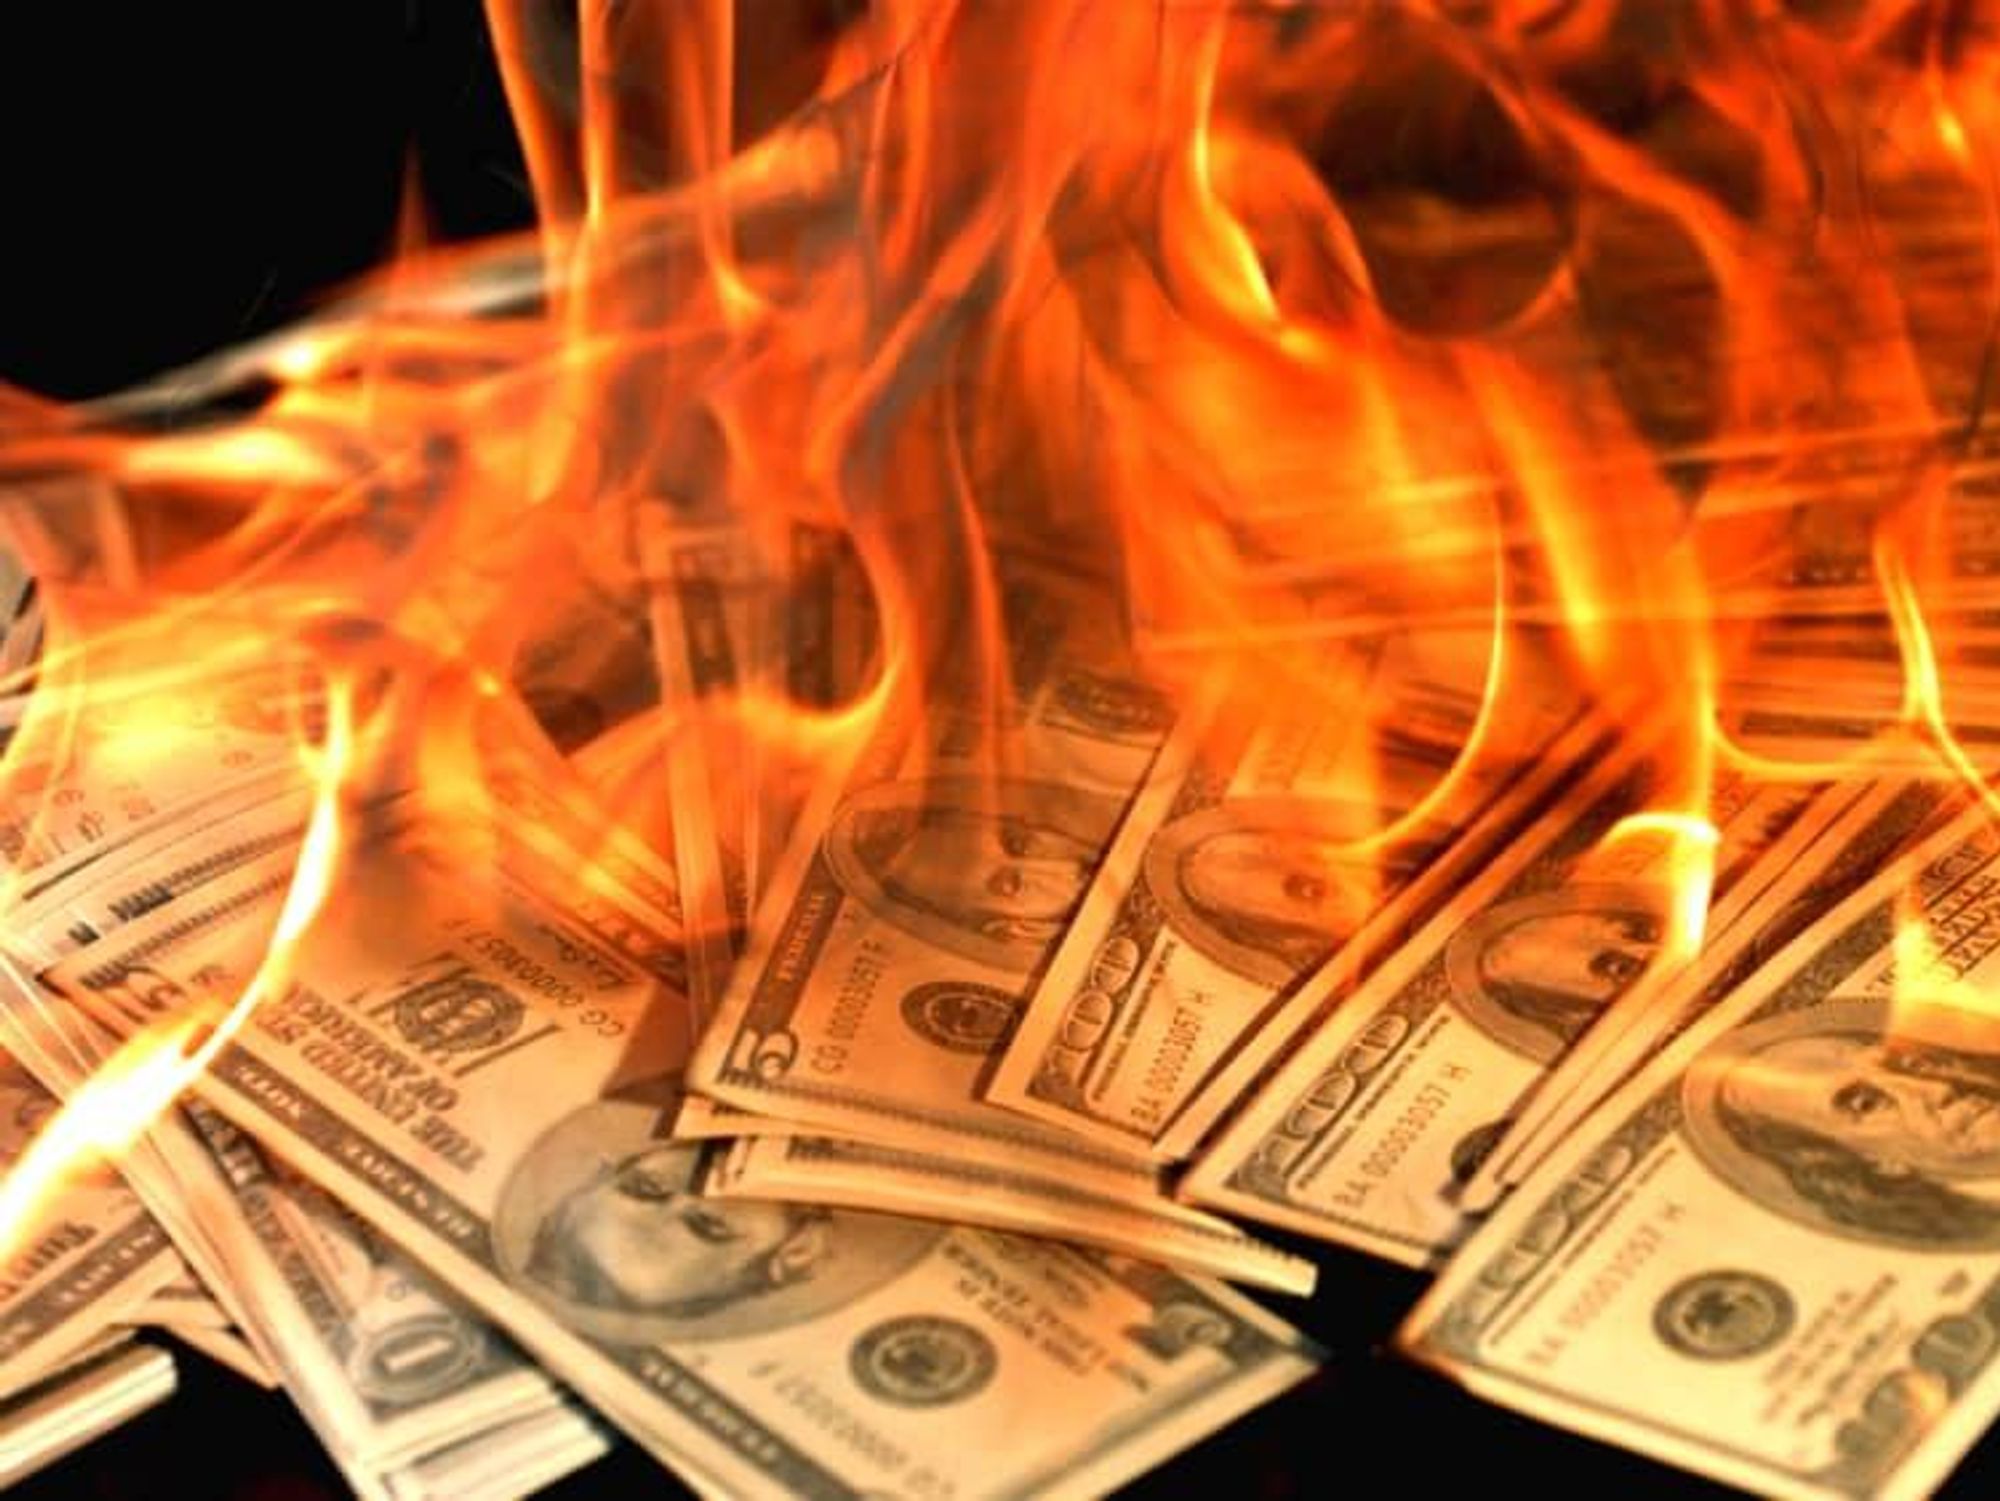 burning money 100 hundred dollar bills